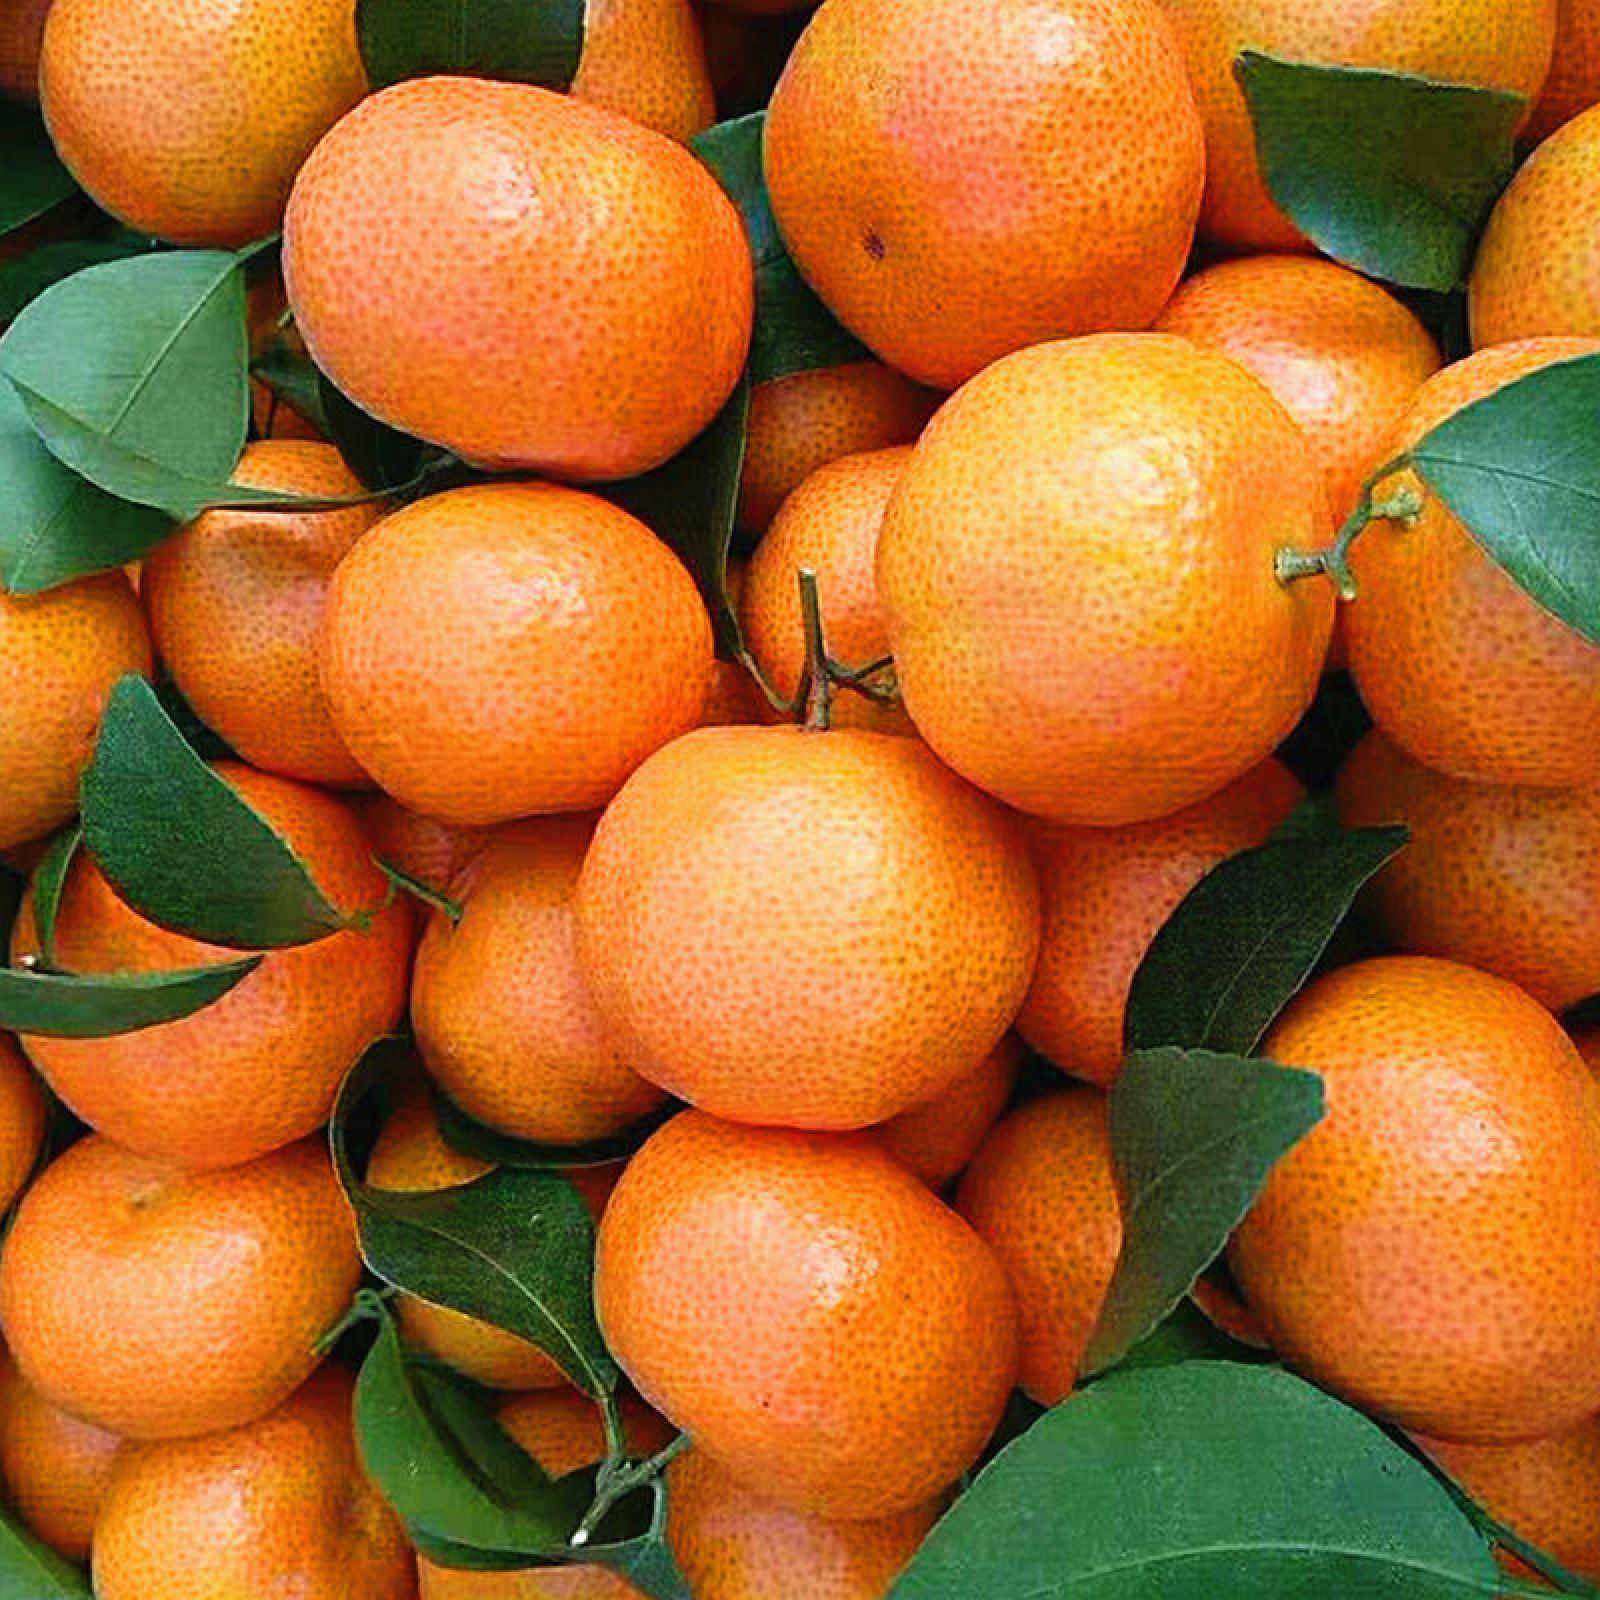 西林县柑桔  西林砂糖橘为中国砂糖橘之乡皮薄肉丰满